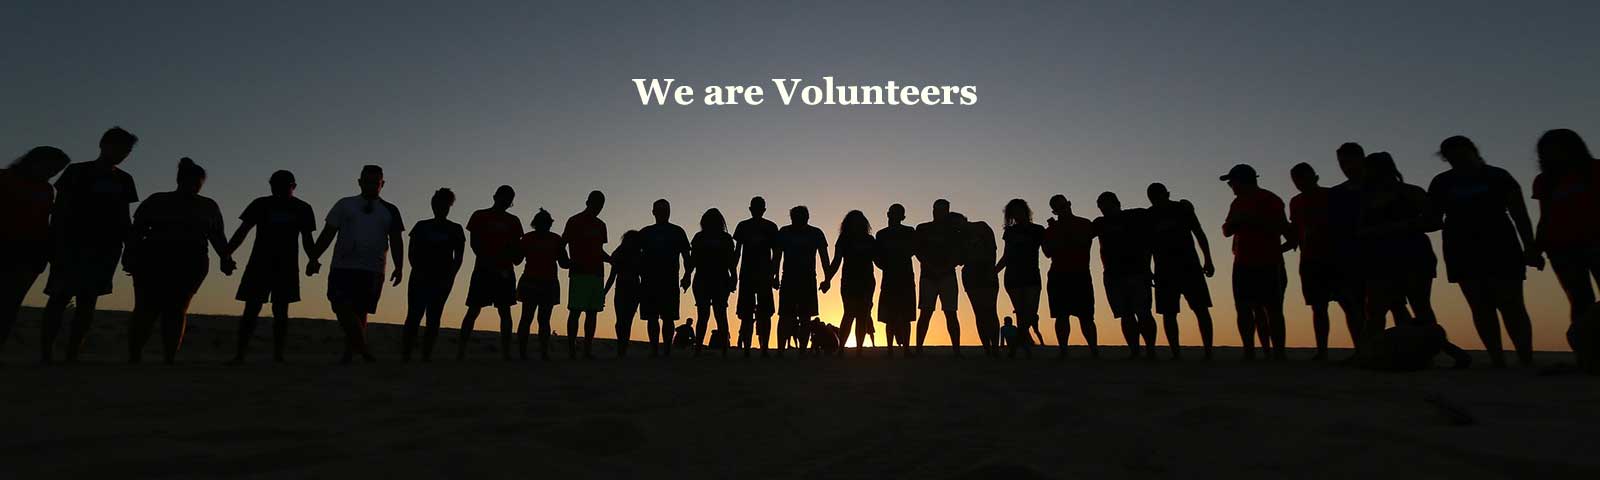 We are Volunteers